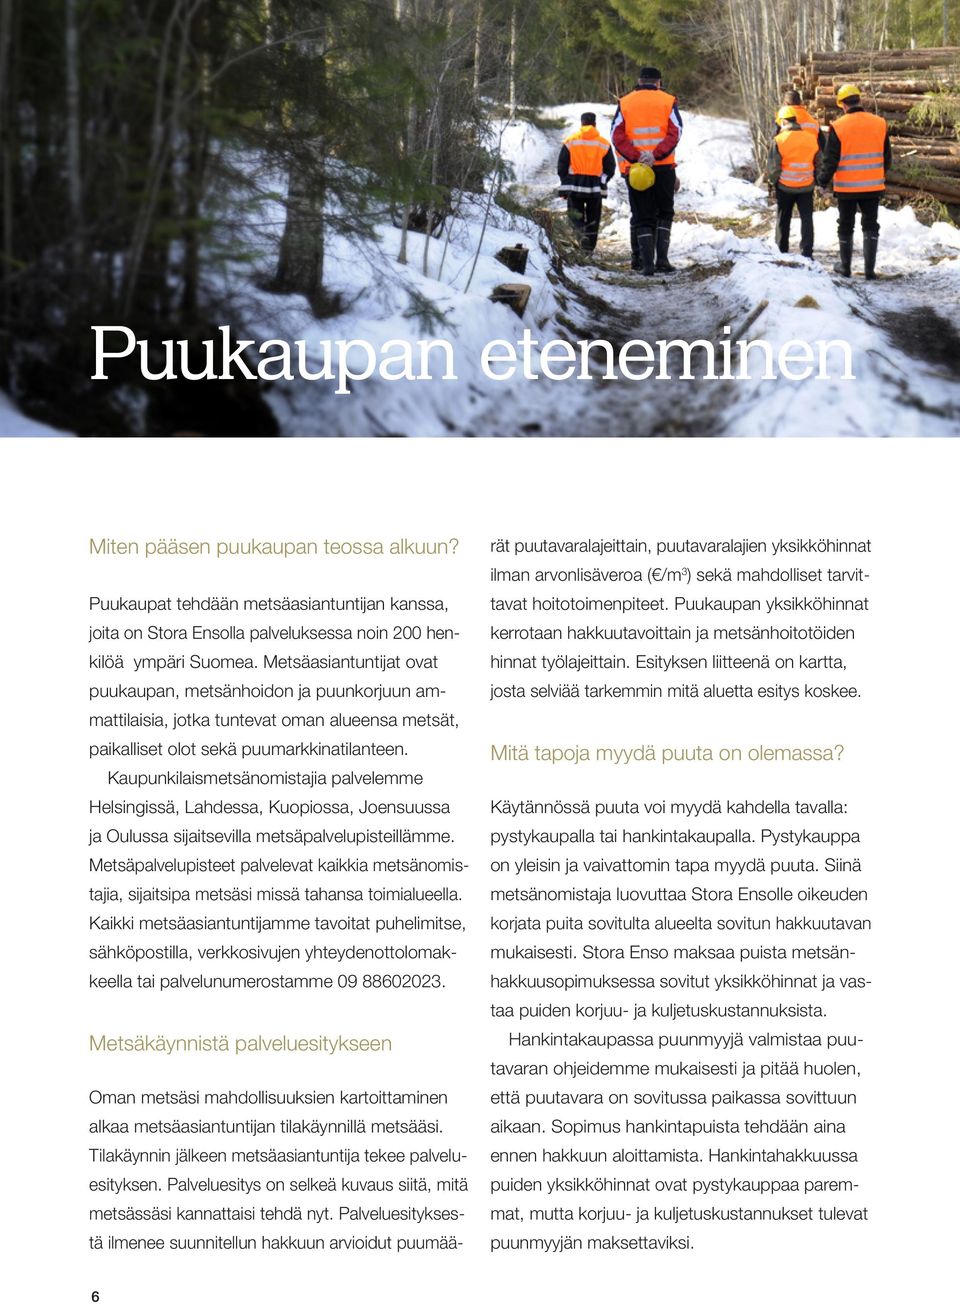 Kaupunkilaismetsänomistajia palvelemme Helsingissä, Lahdessa, Kuopiossa, Joensuussa ja Oulussa sijaitsevilla metsäpalvelupisteillämme.